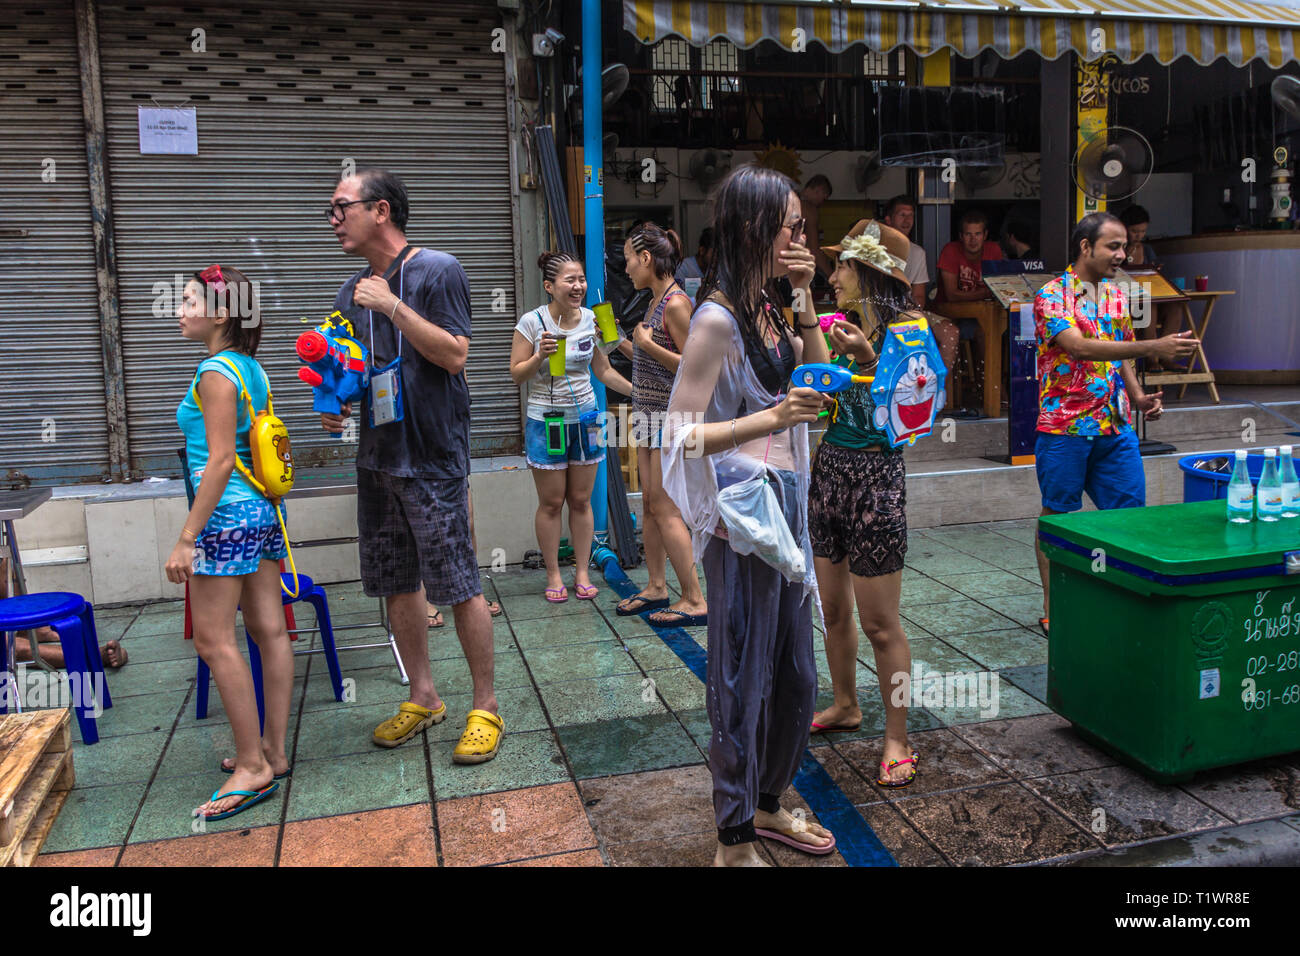 Jeune fille célébrant le nouvel an Thaï de Songkran à Khaosan Road, Bangkok Thaïlande Banque D'Images